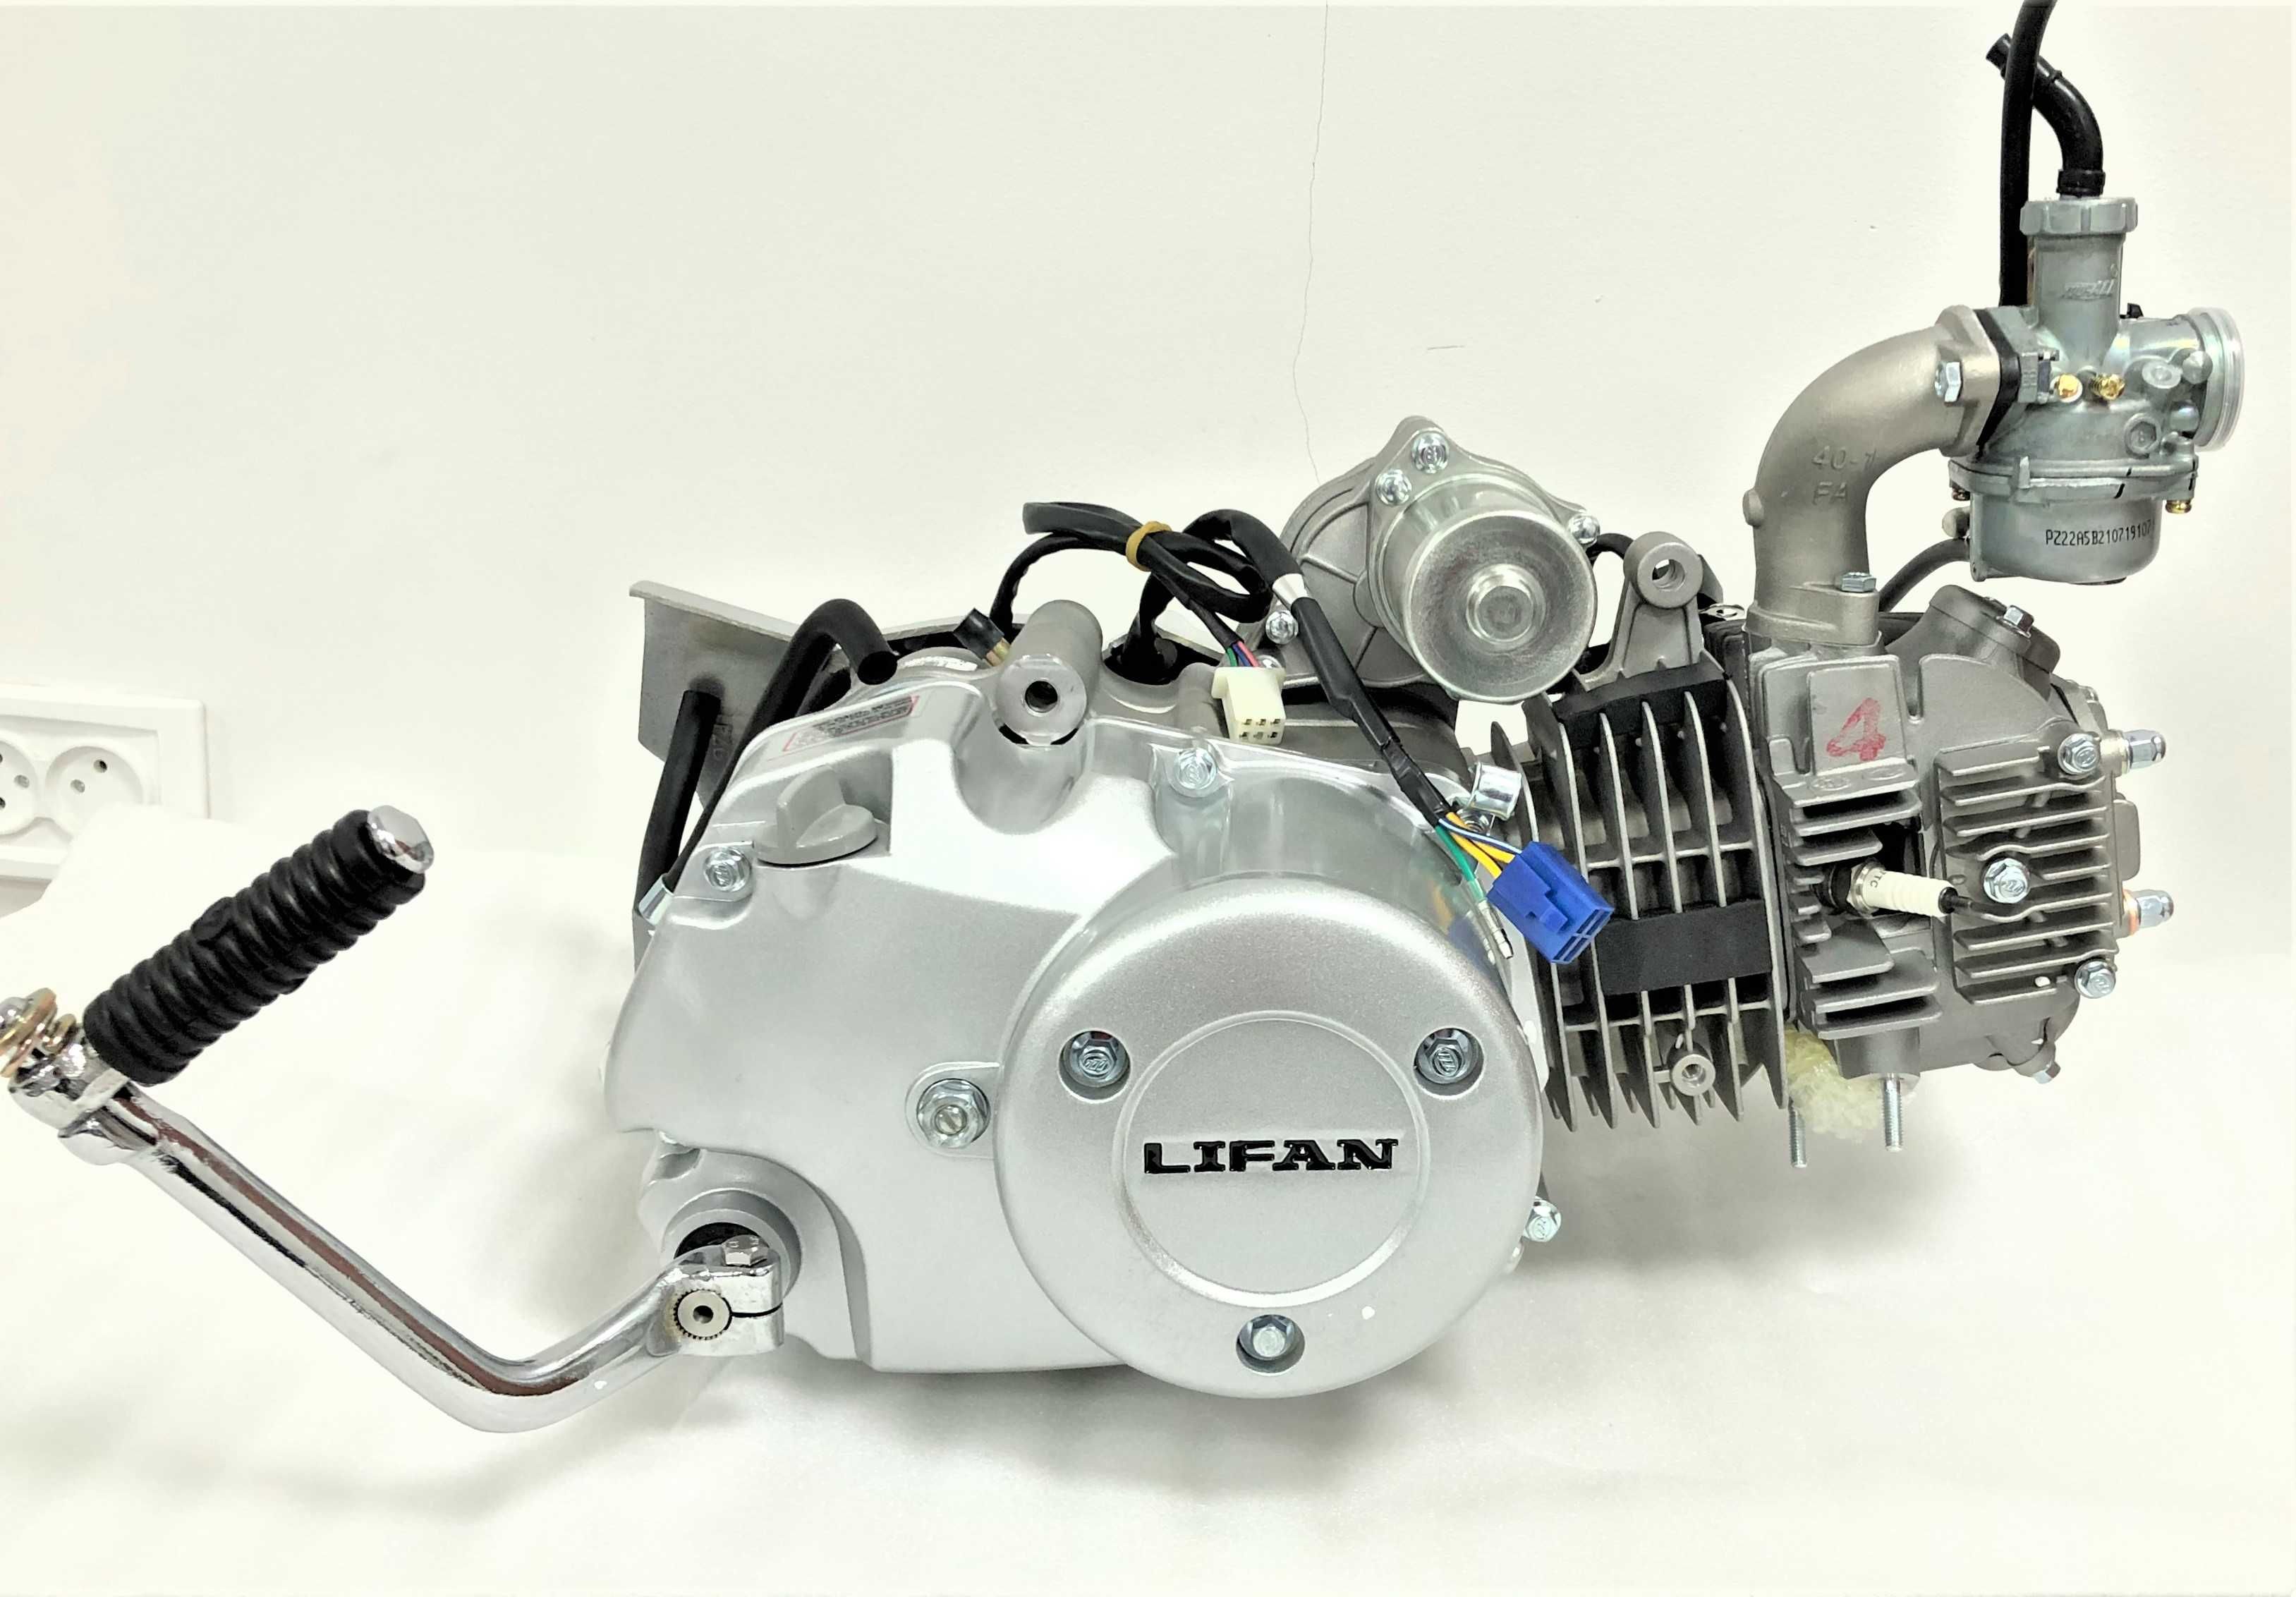 Двигатели LIFAN 152FMI, 125куб.см с Полуавтоматической трансмиссией